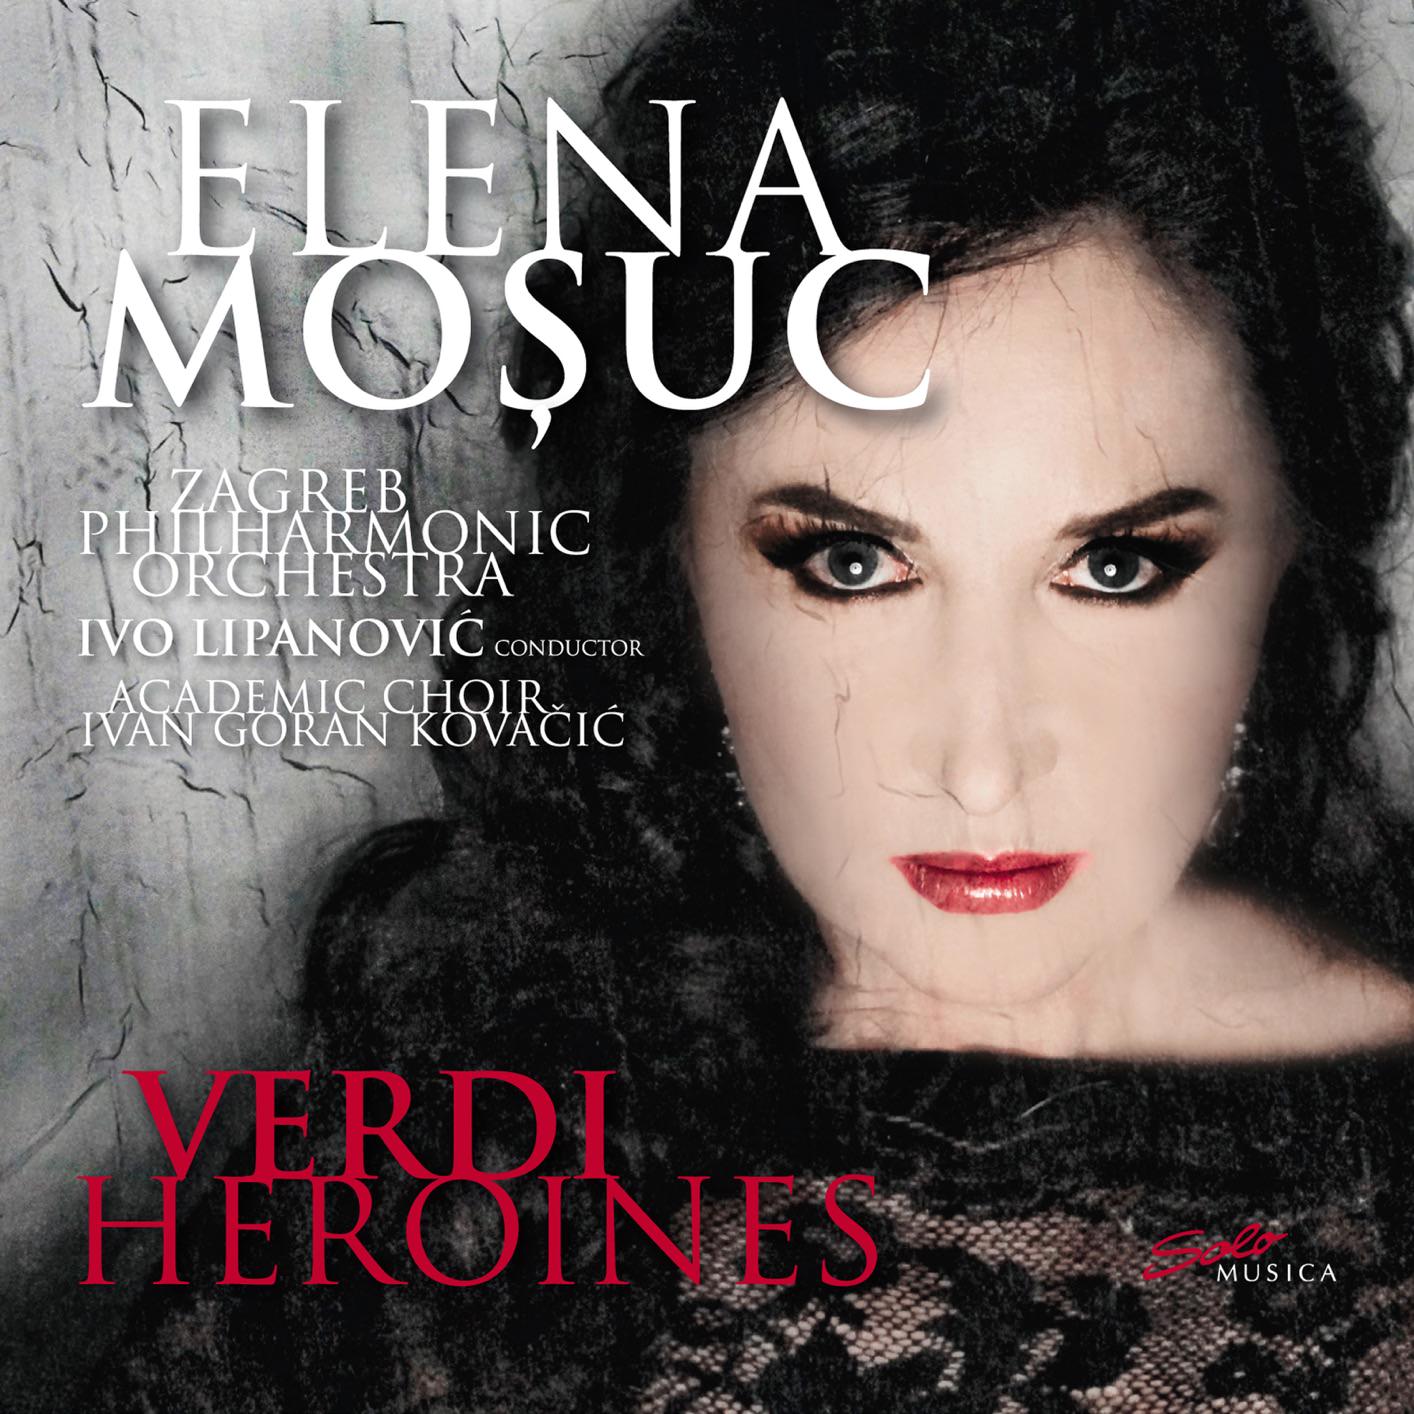 Elena Mosuc - Verdi Heroines: Elena Mosuc (2018) [FLAC 24bit/48kHz]